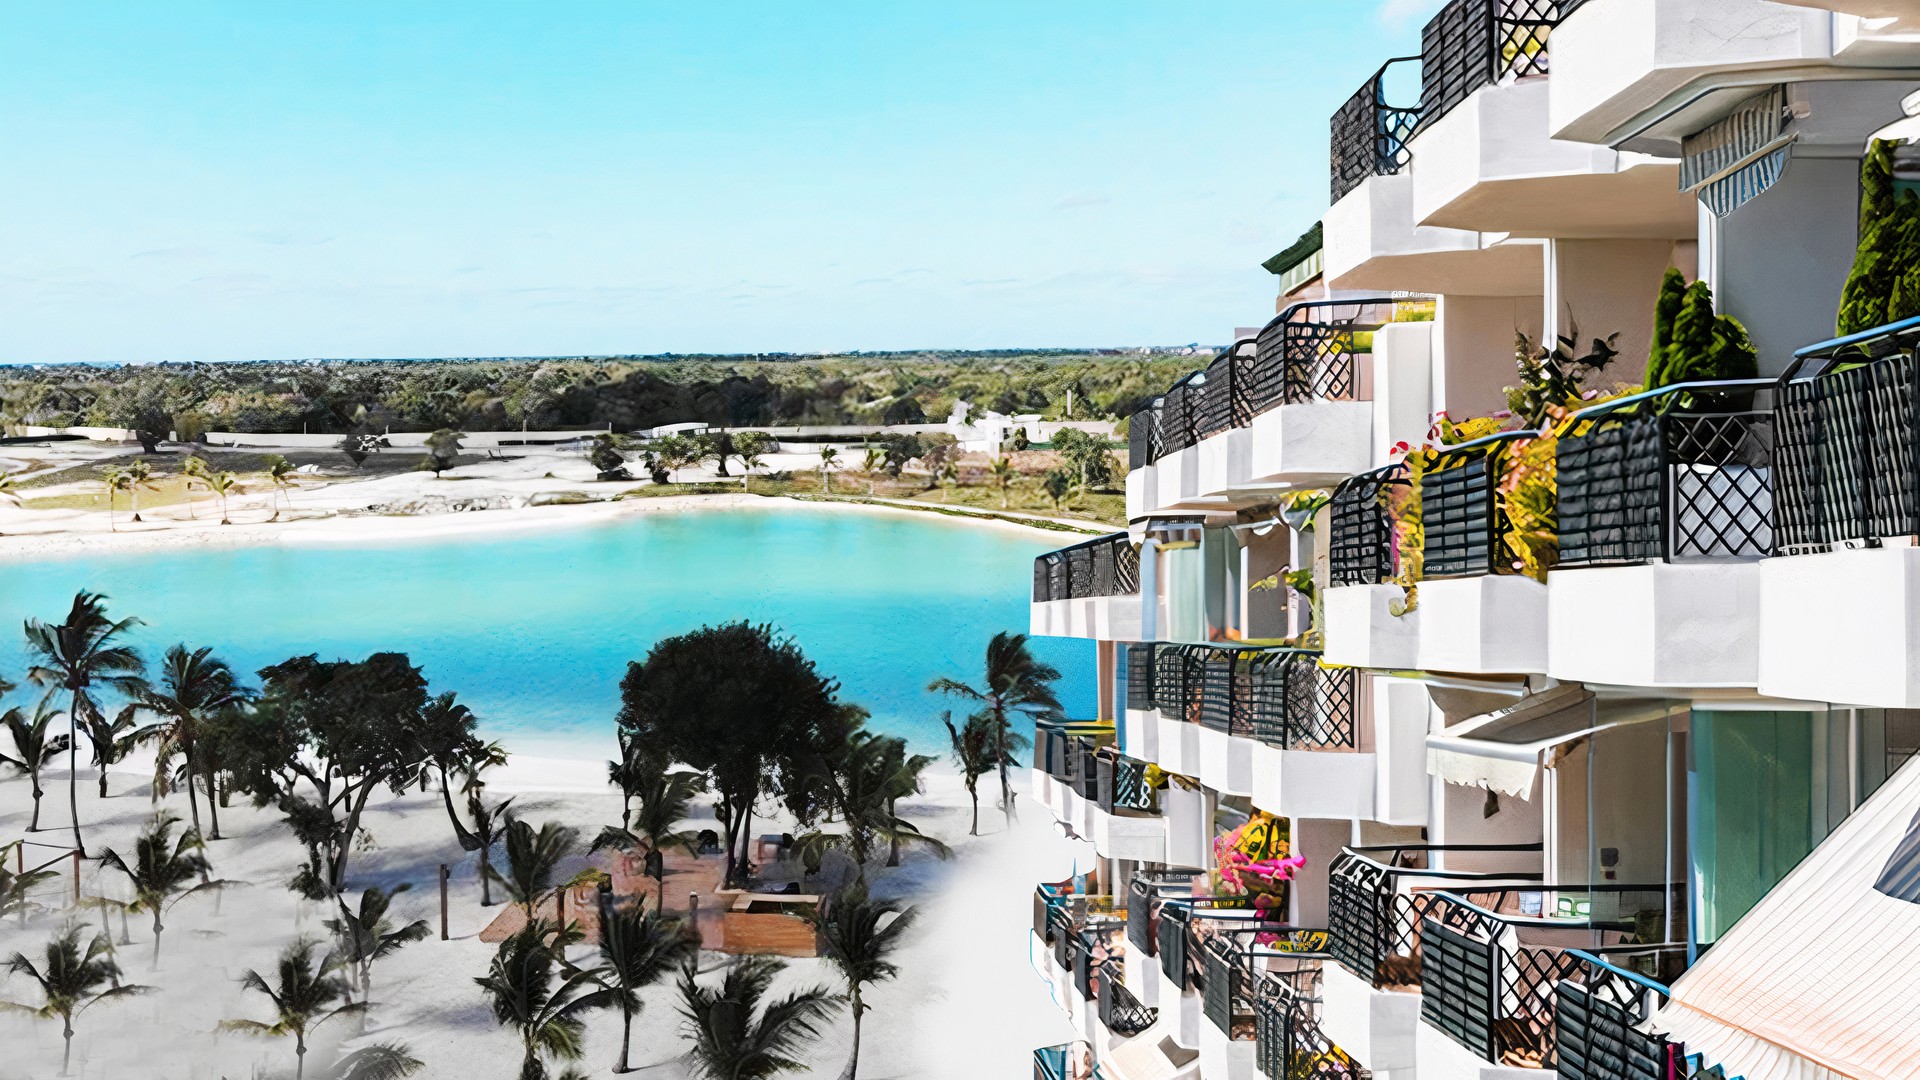 apartamentos - Apartamentos en Venta en Punta Cana en Vista Cana con Todas las Amenidades